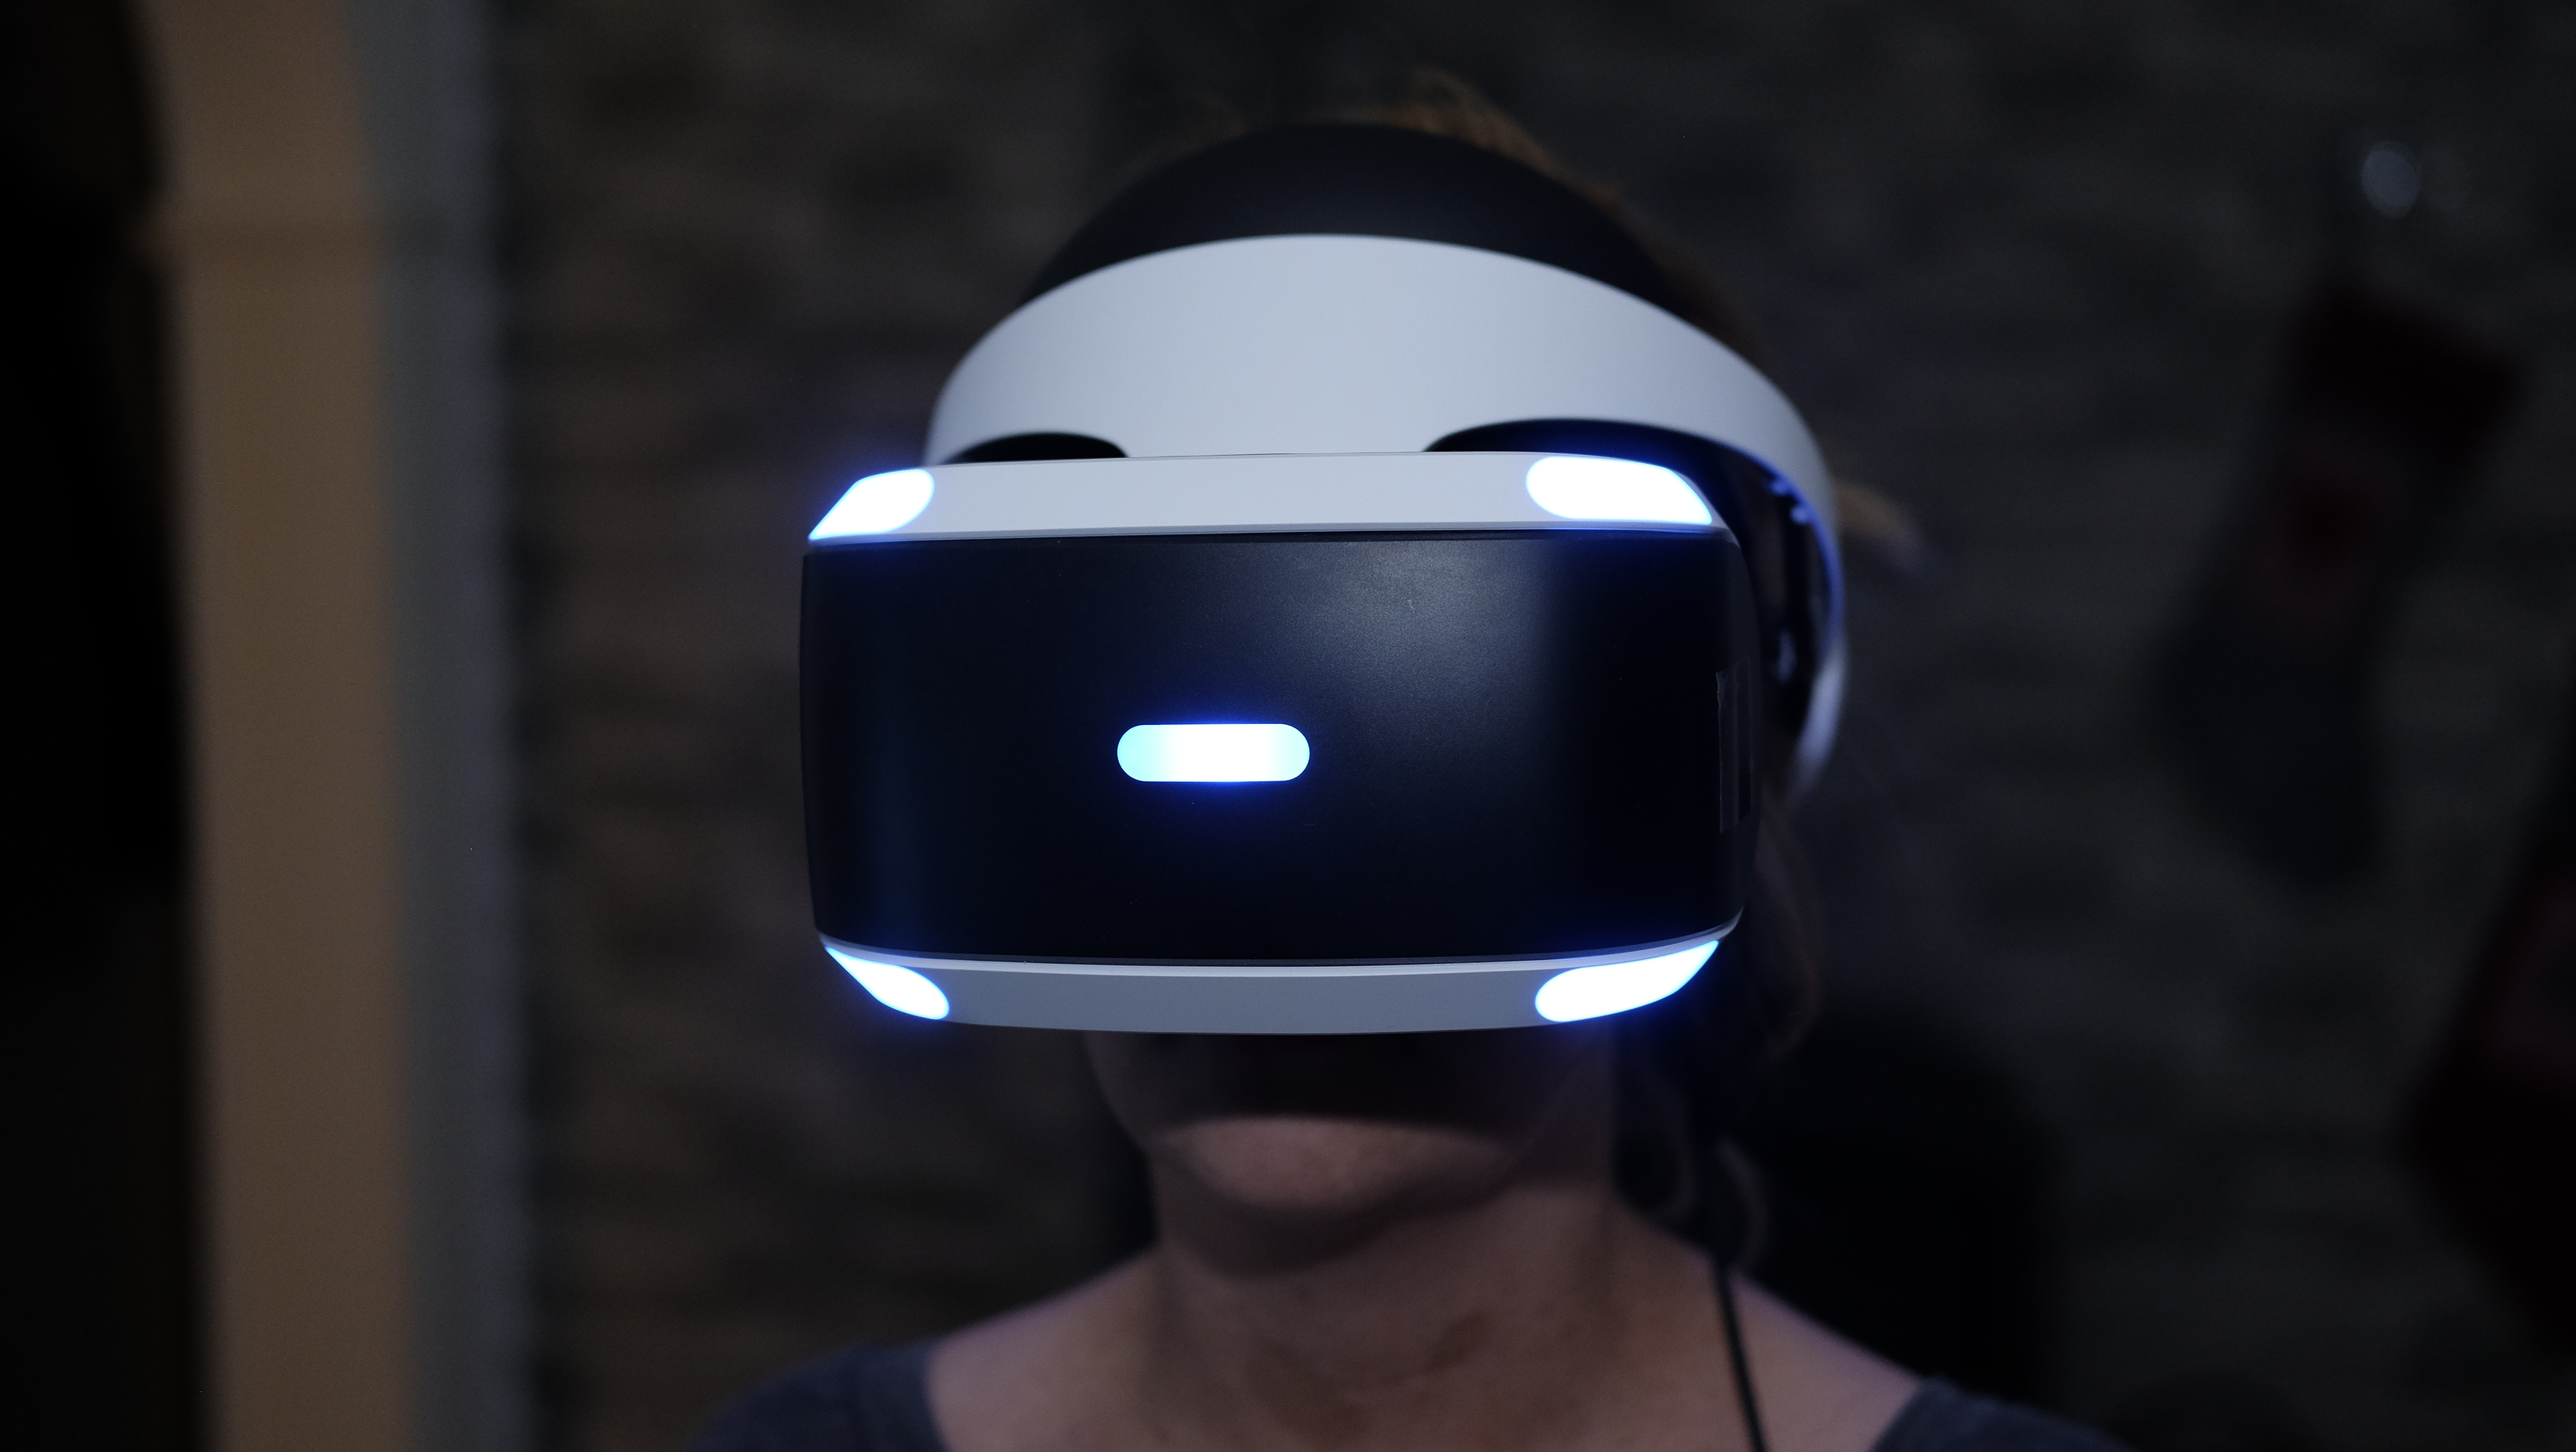 Nå blir PlayStation VR billigere